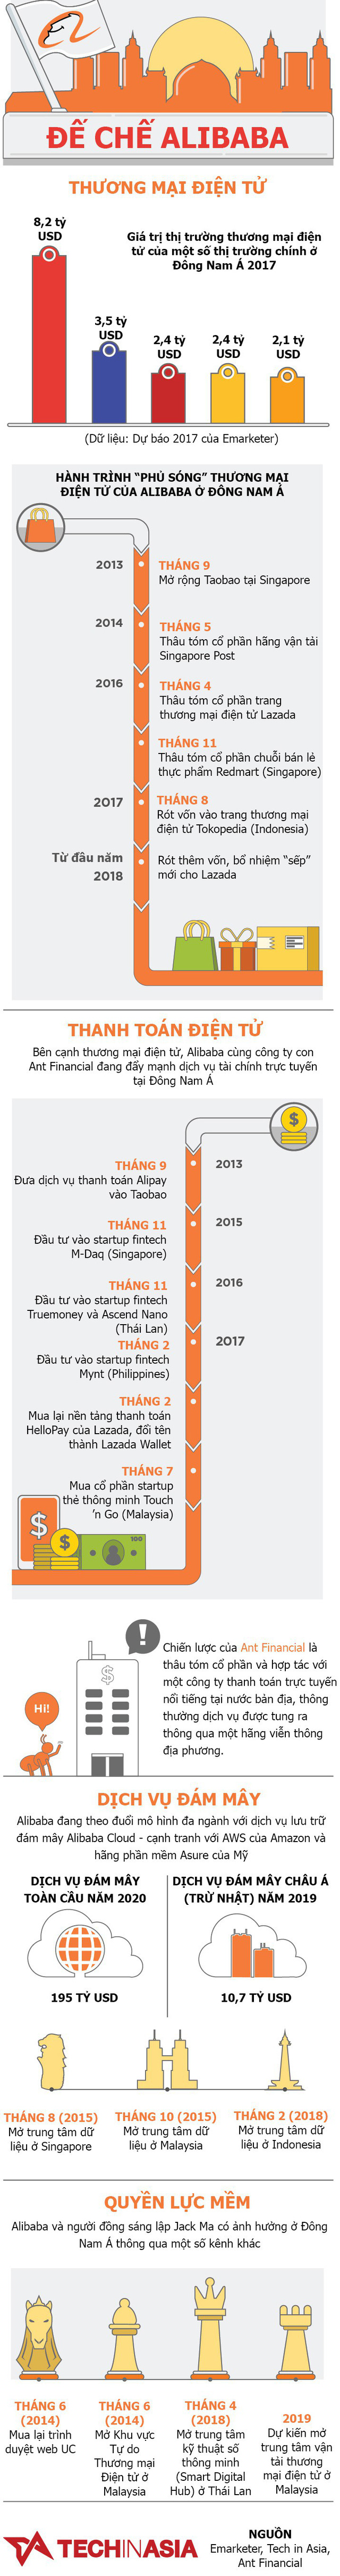 Alibaba đang bành trướng ở Đông Nam Á như thế nào? - Ảnh 1.